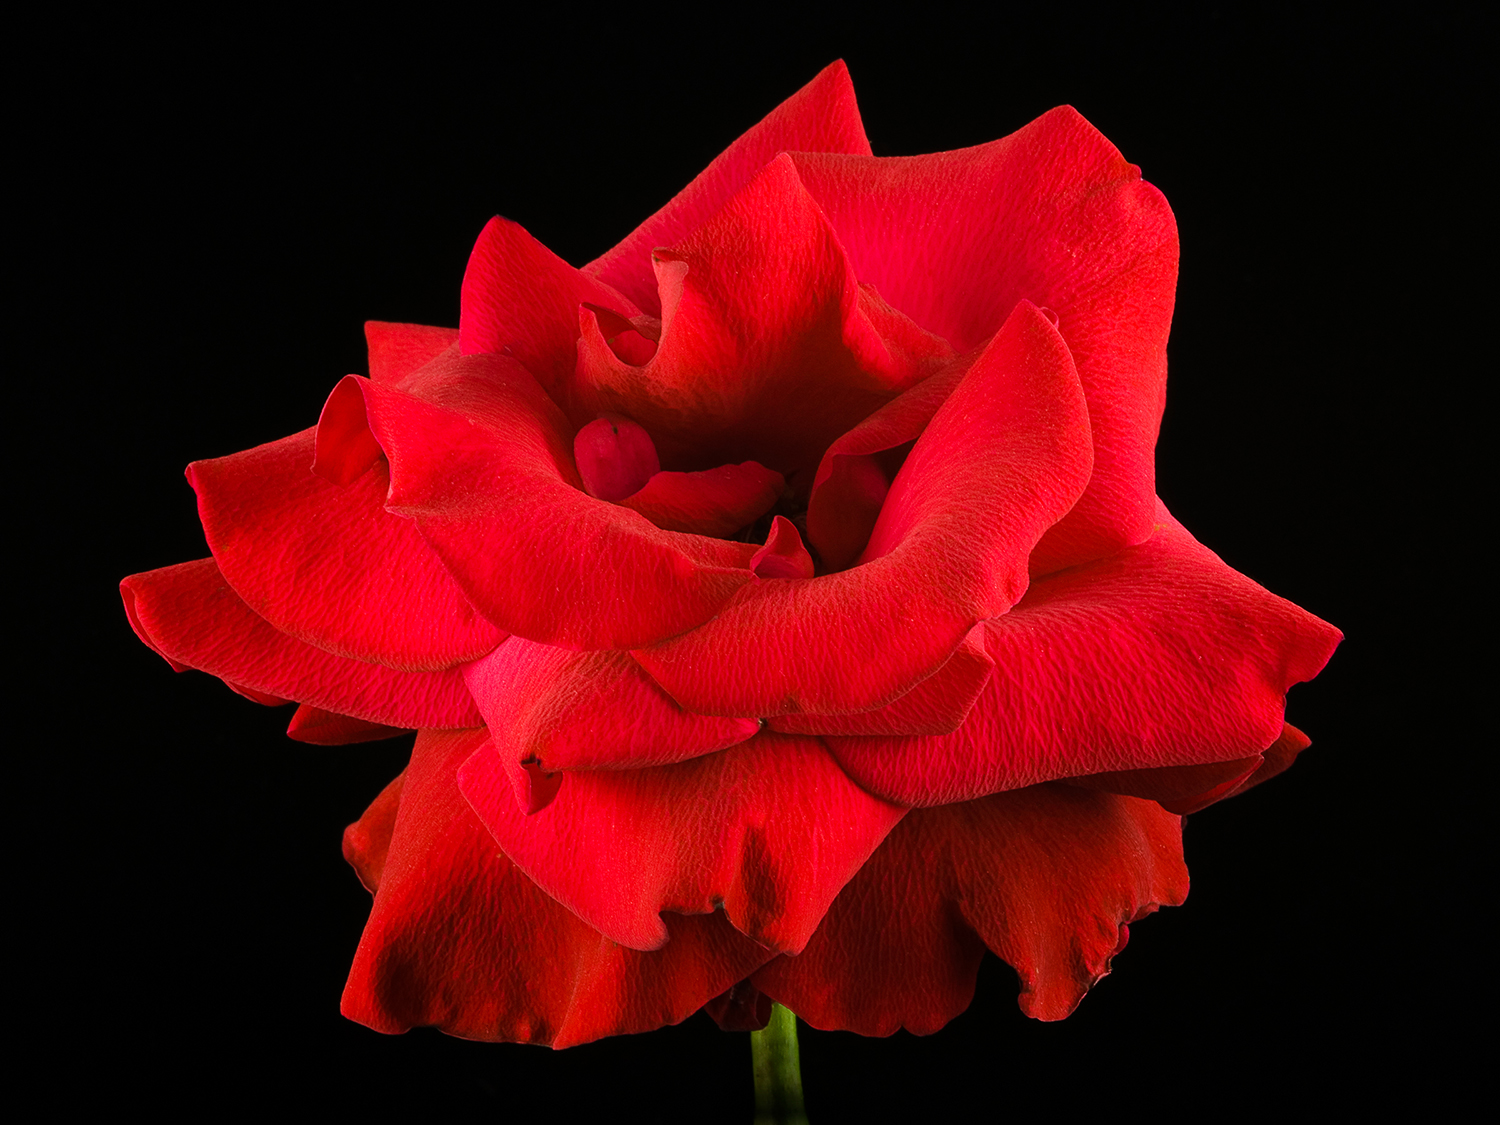 Rose, "Opening Night"